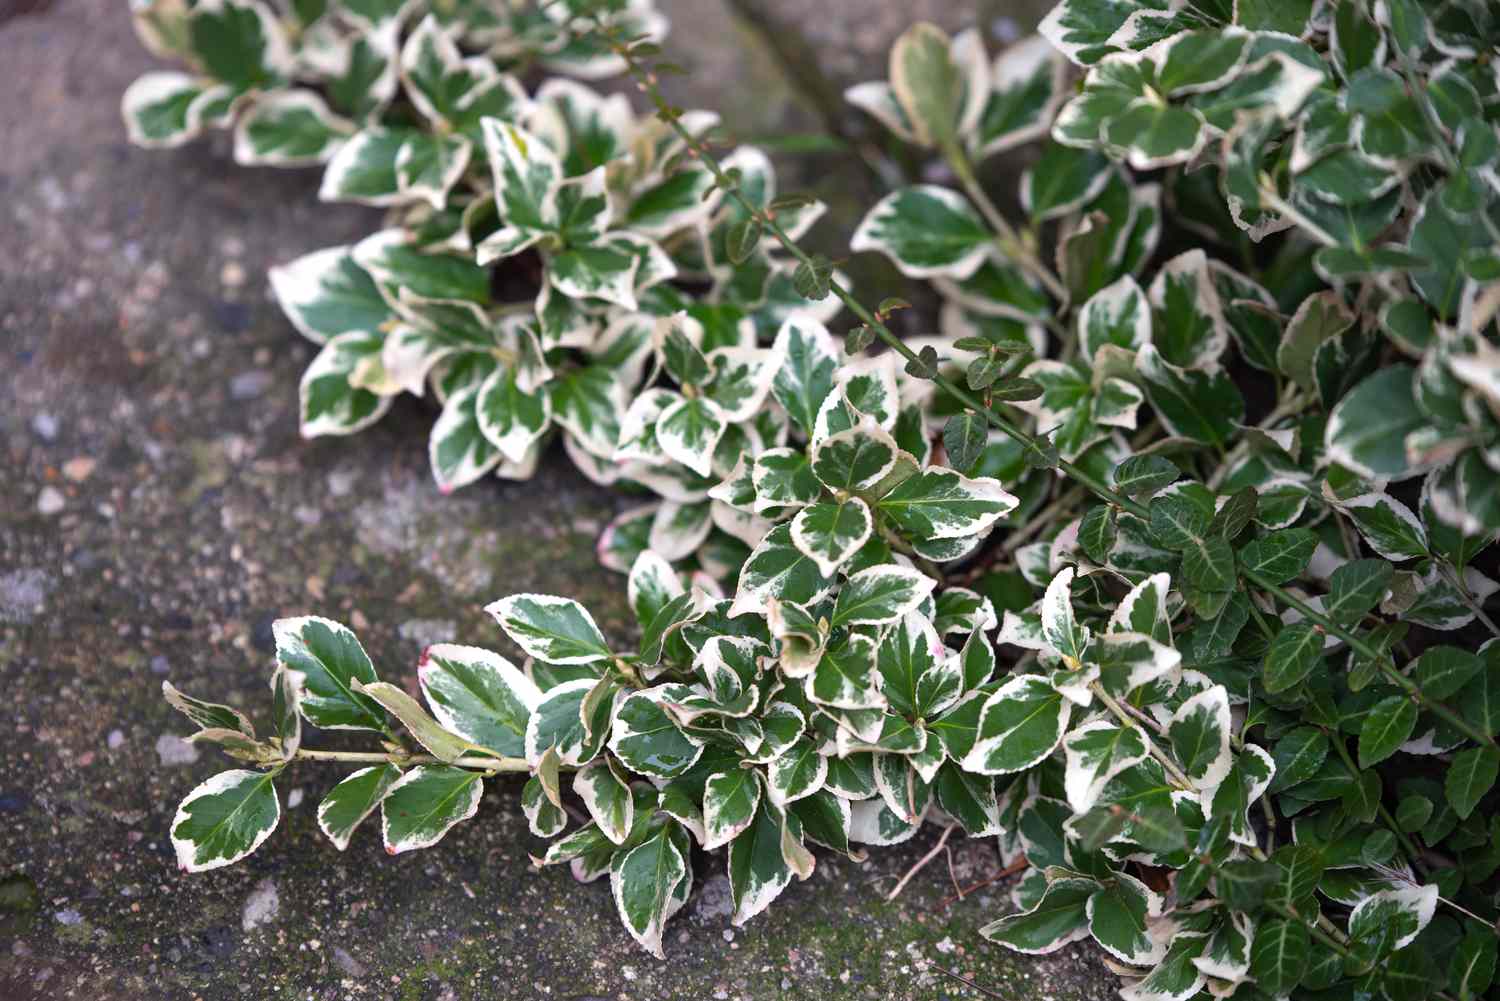 Branche d'arbuste 'Emerald Gaiety' avec des feuilles blanches et vertes sur le sol